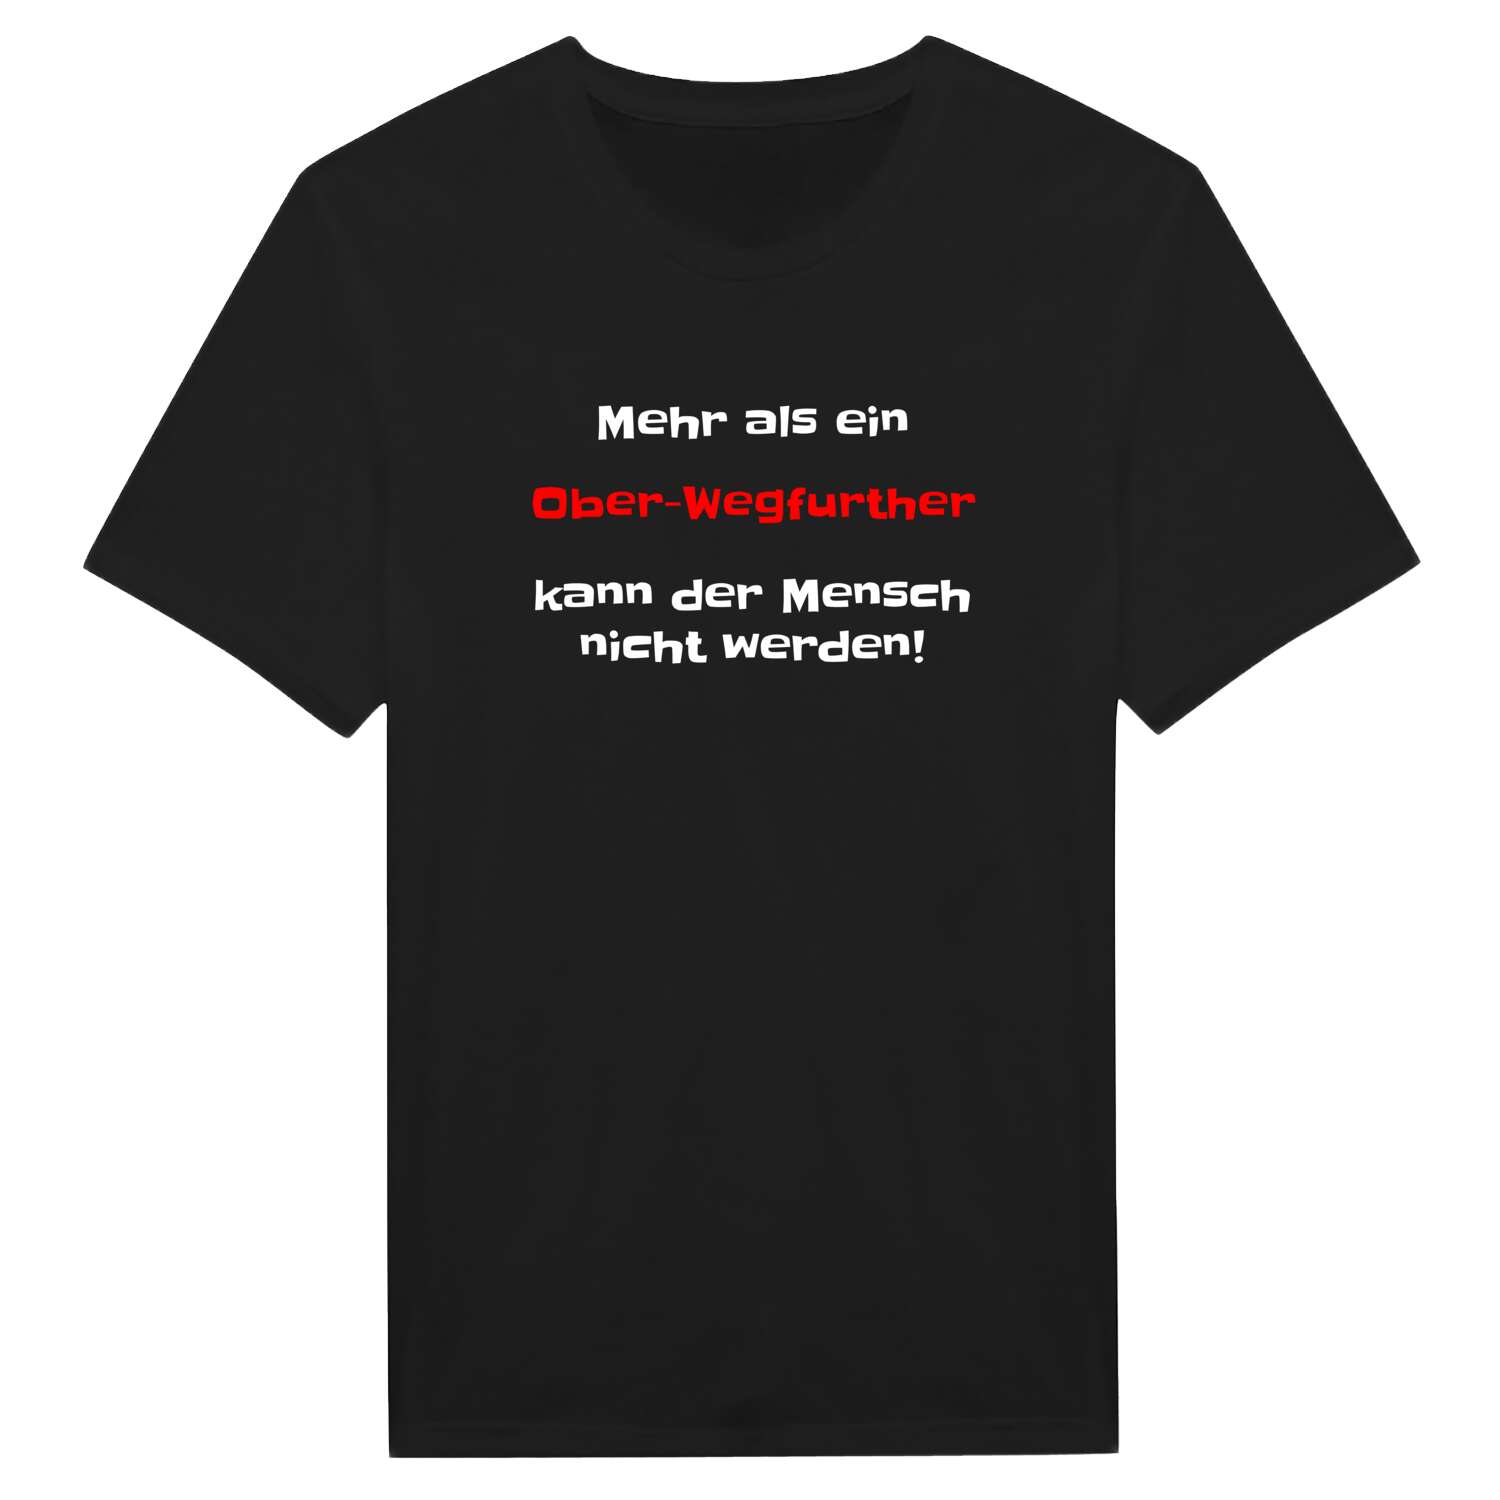 Ober-Wegfurth T-Shirt »Mehr als ein«